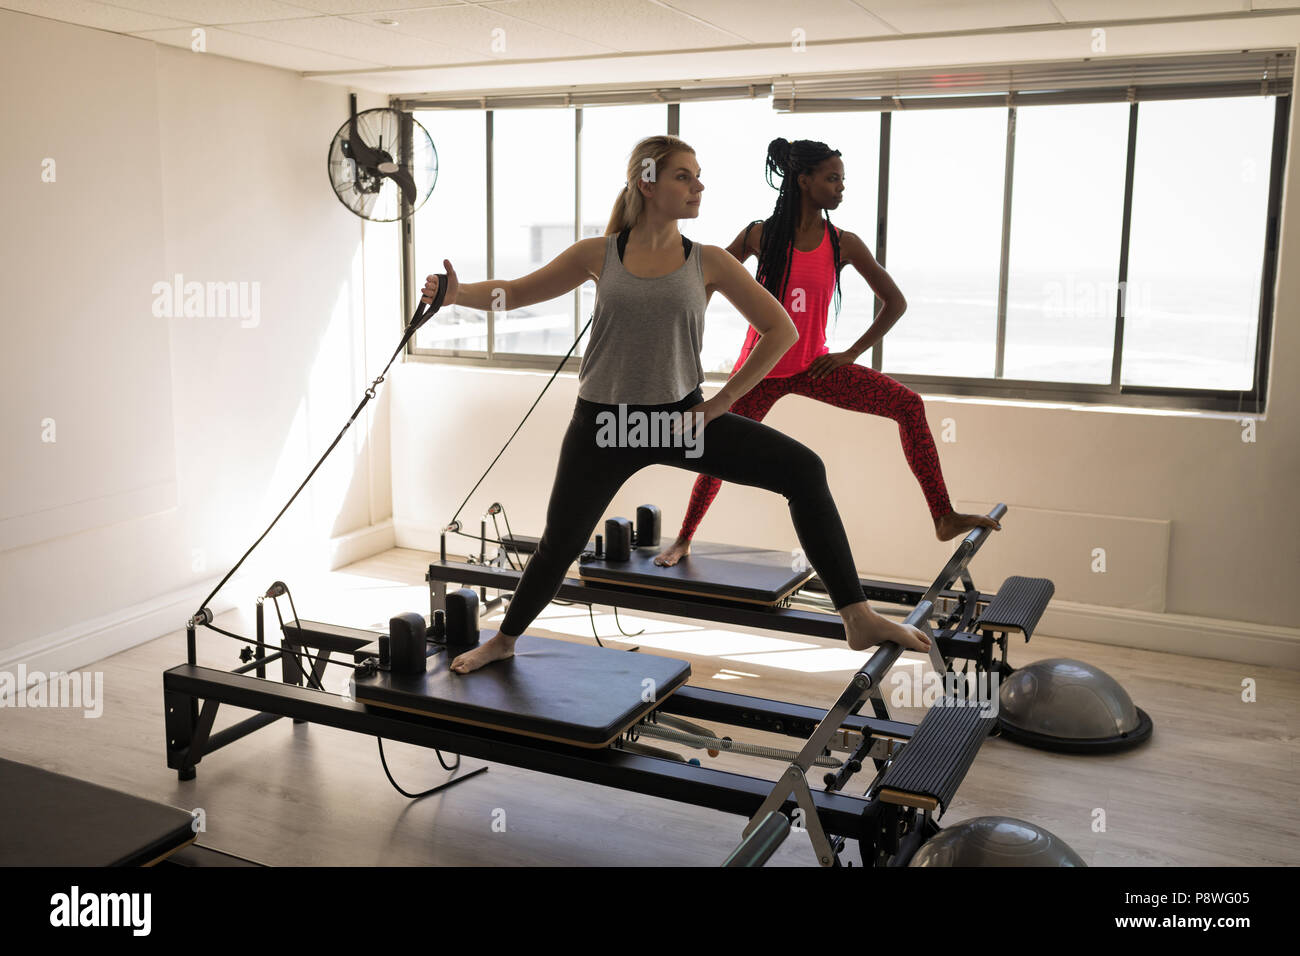 Deux femmes l'exercice sur machine pour étirements Banque D'Images